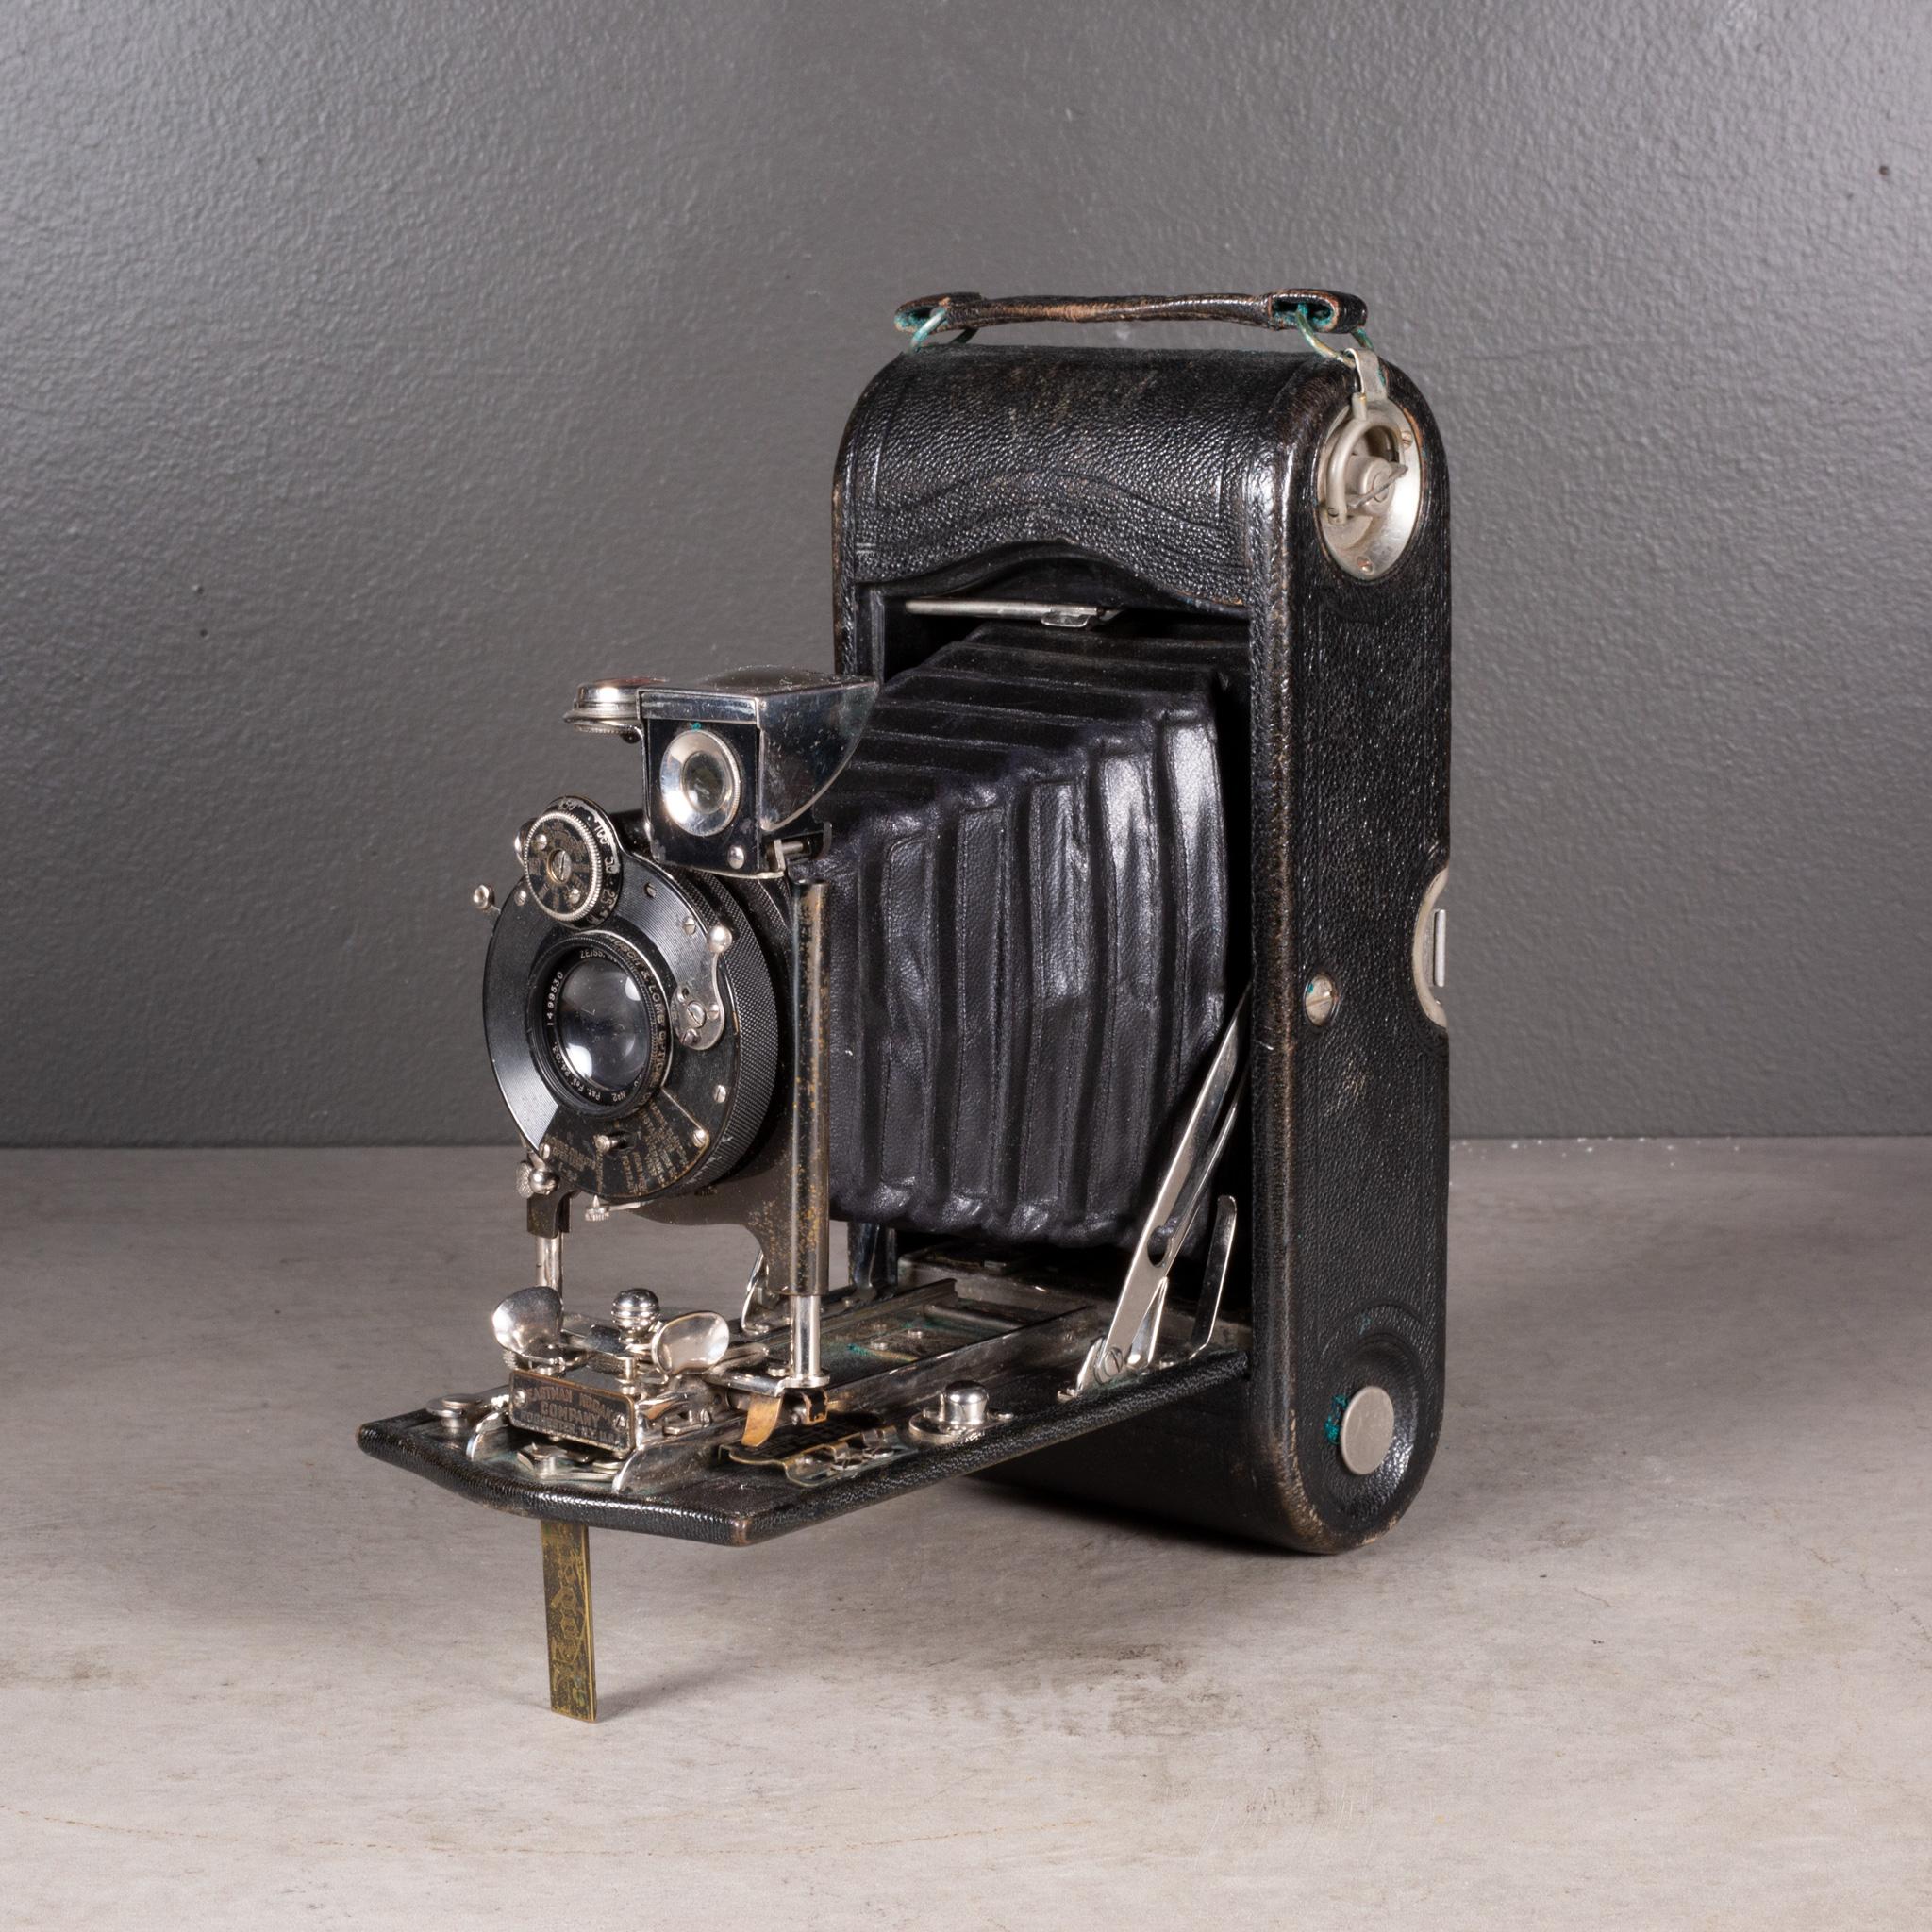 Industriel Grande appareil photo Kodak n° 2 pliable avec étui en cuir c.1903 (expédition gratuite) en vente